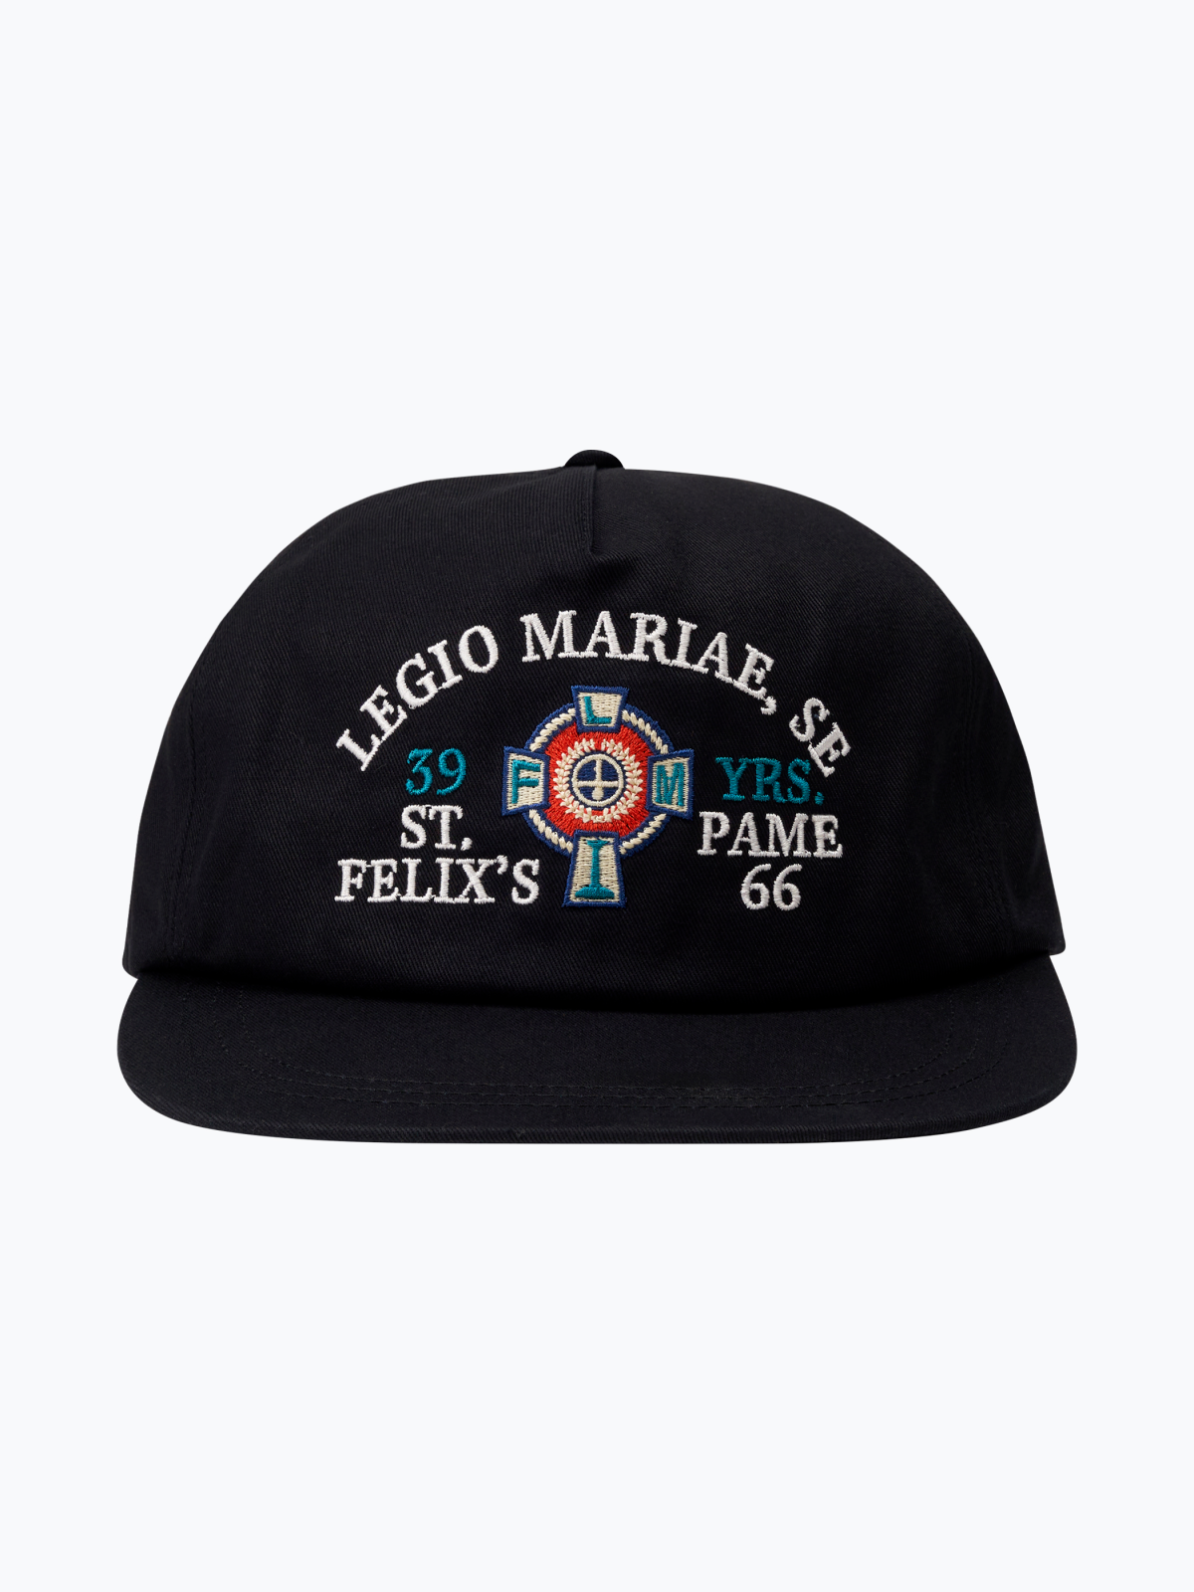 [PAME66] LEGIO MARIAE CAP